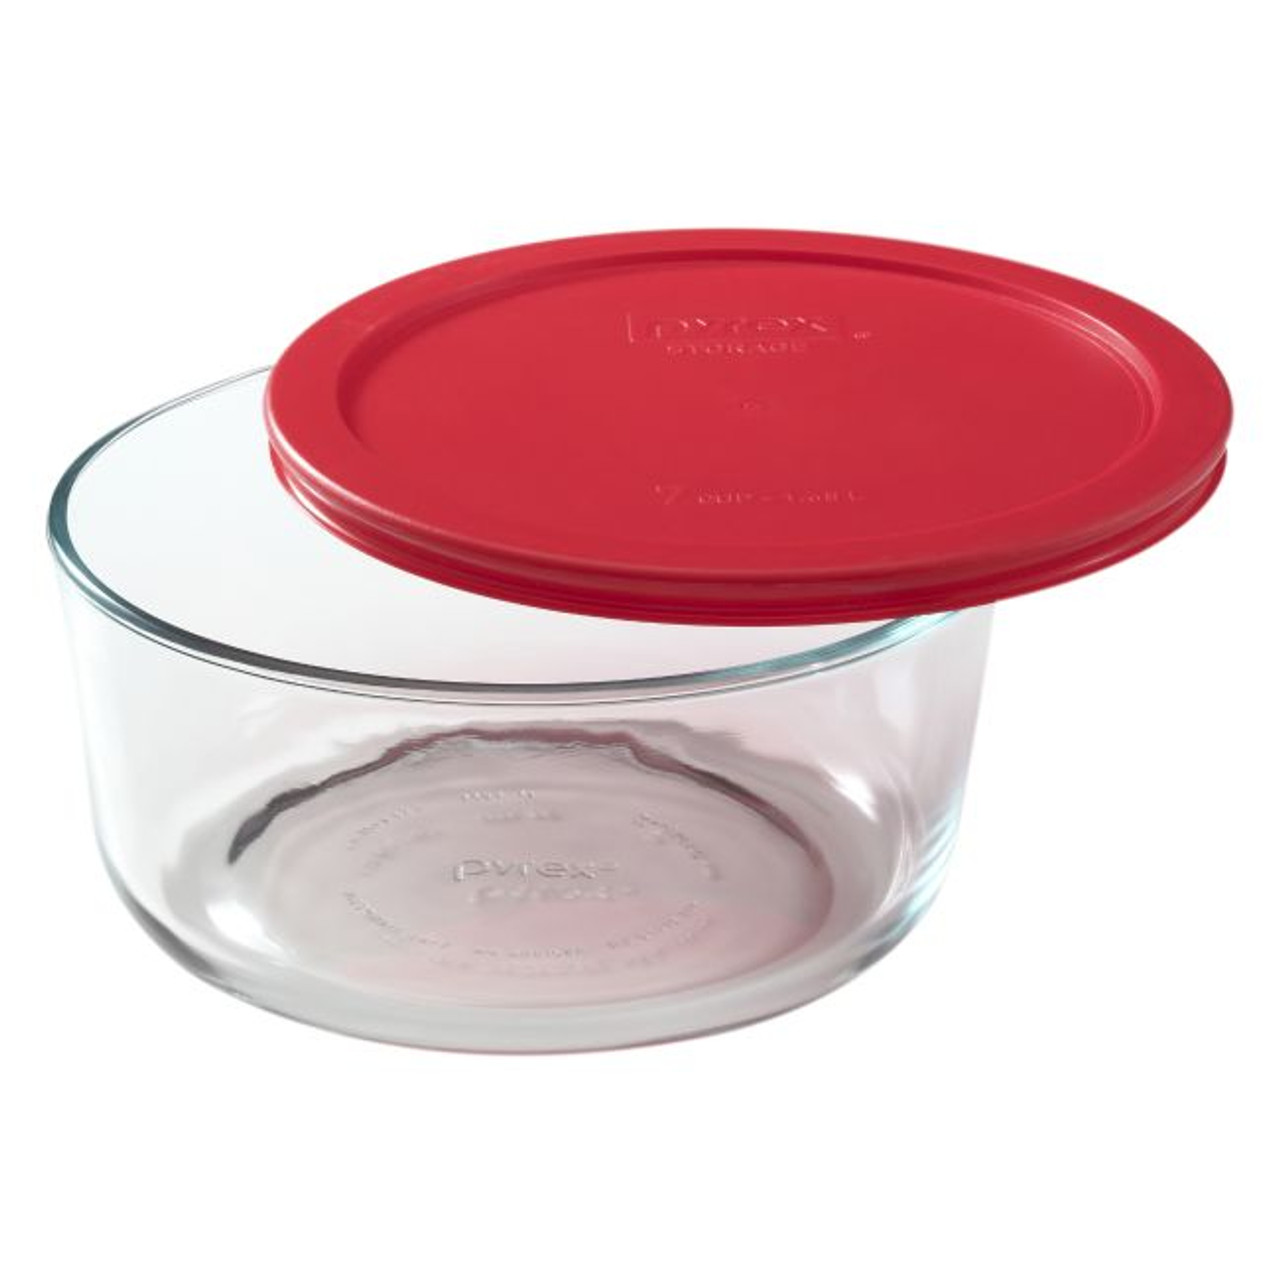 Pyrex 7203 Round Glass Food Storage Bowl w/ 7402-PC Red Plastic